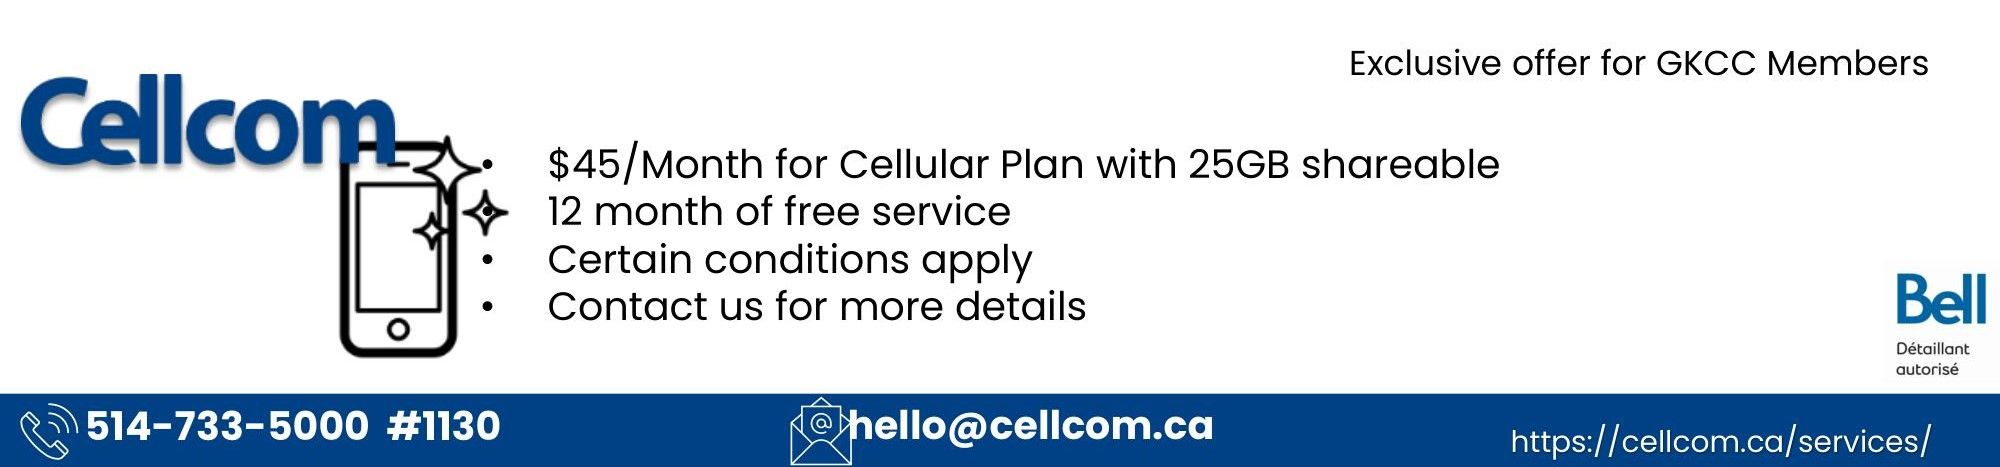 Cellcom Chamber of Commerce Offer.jpg